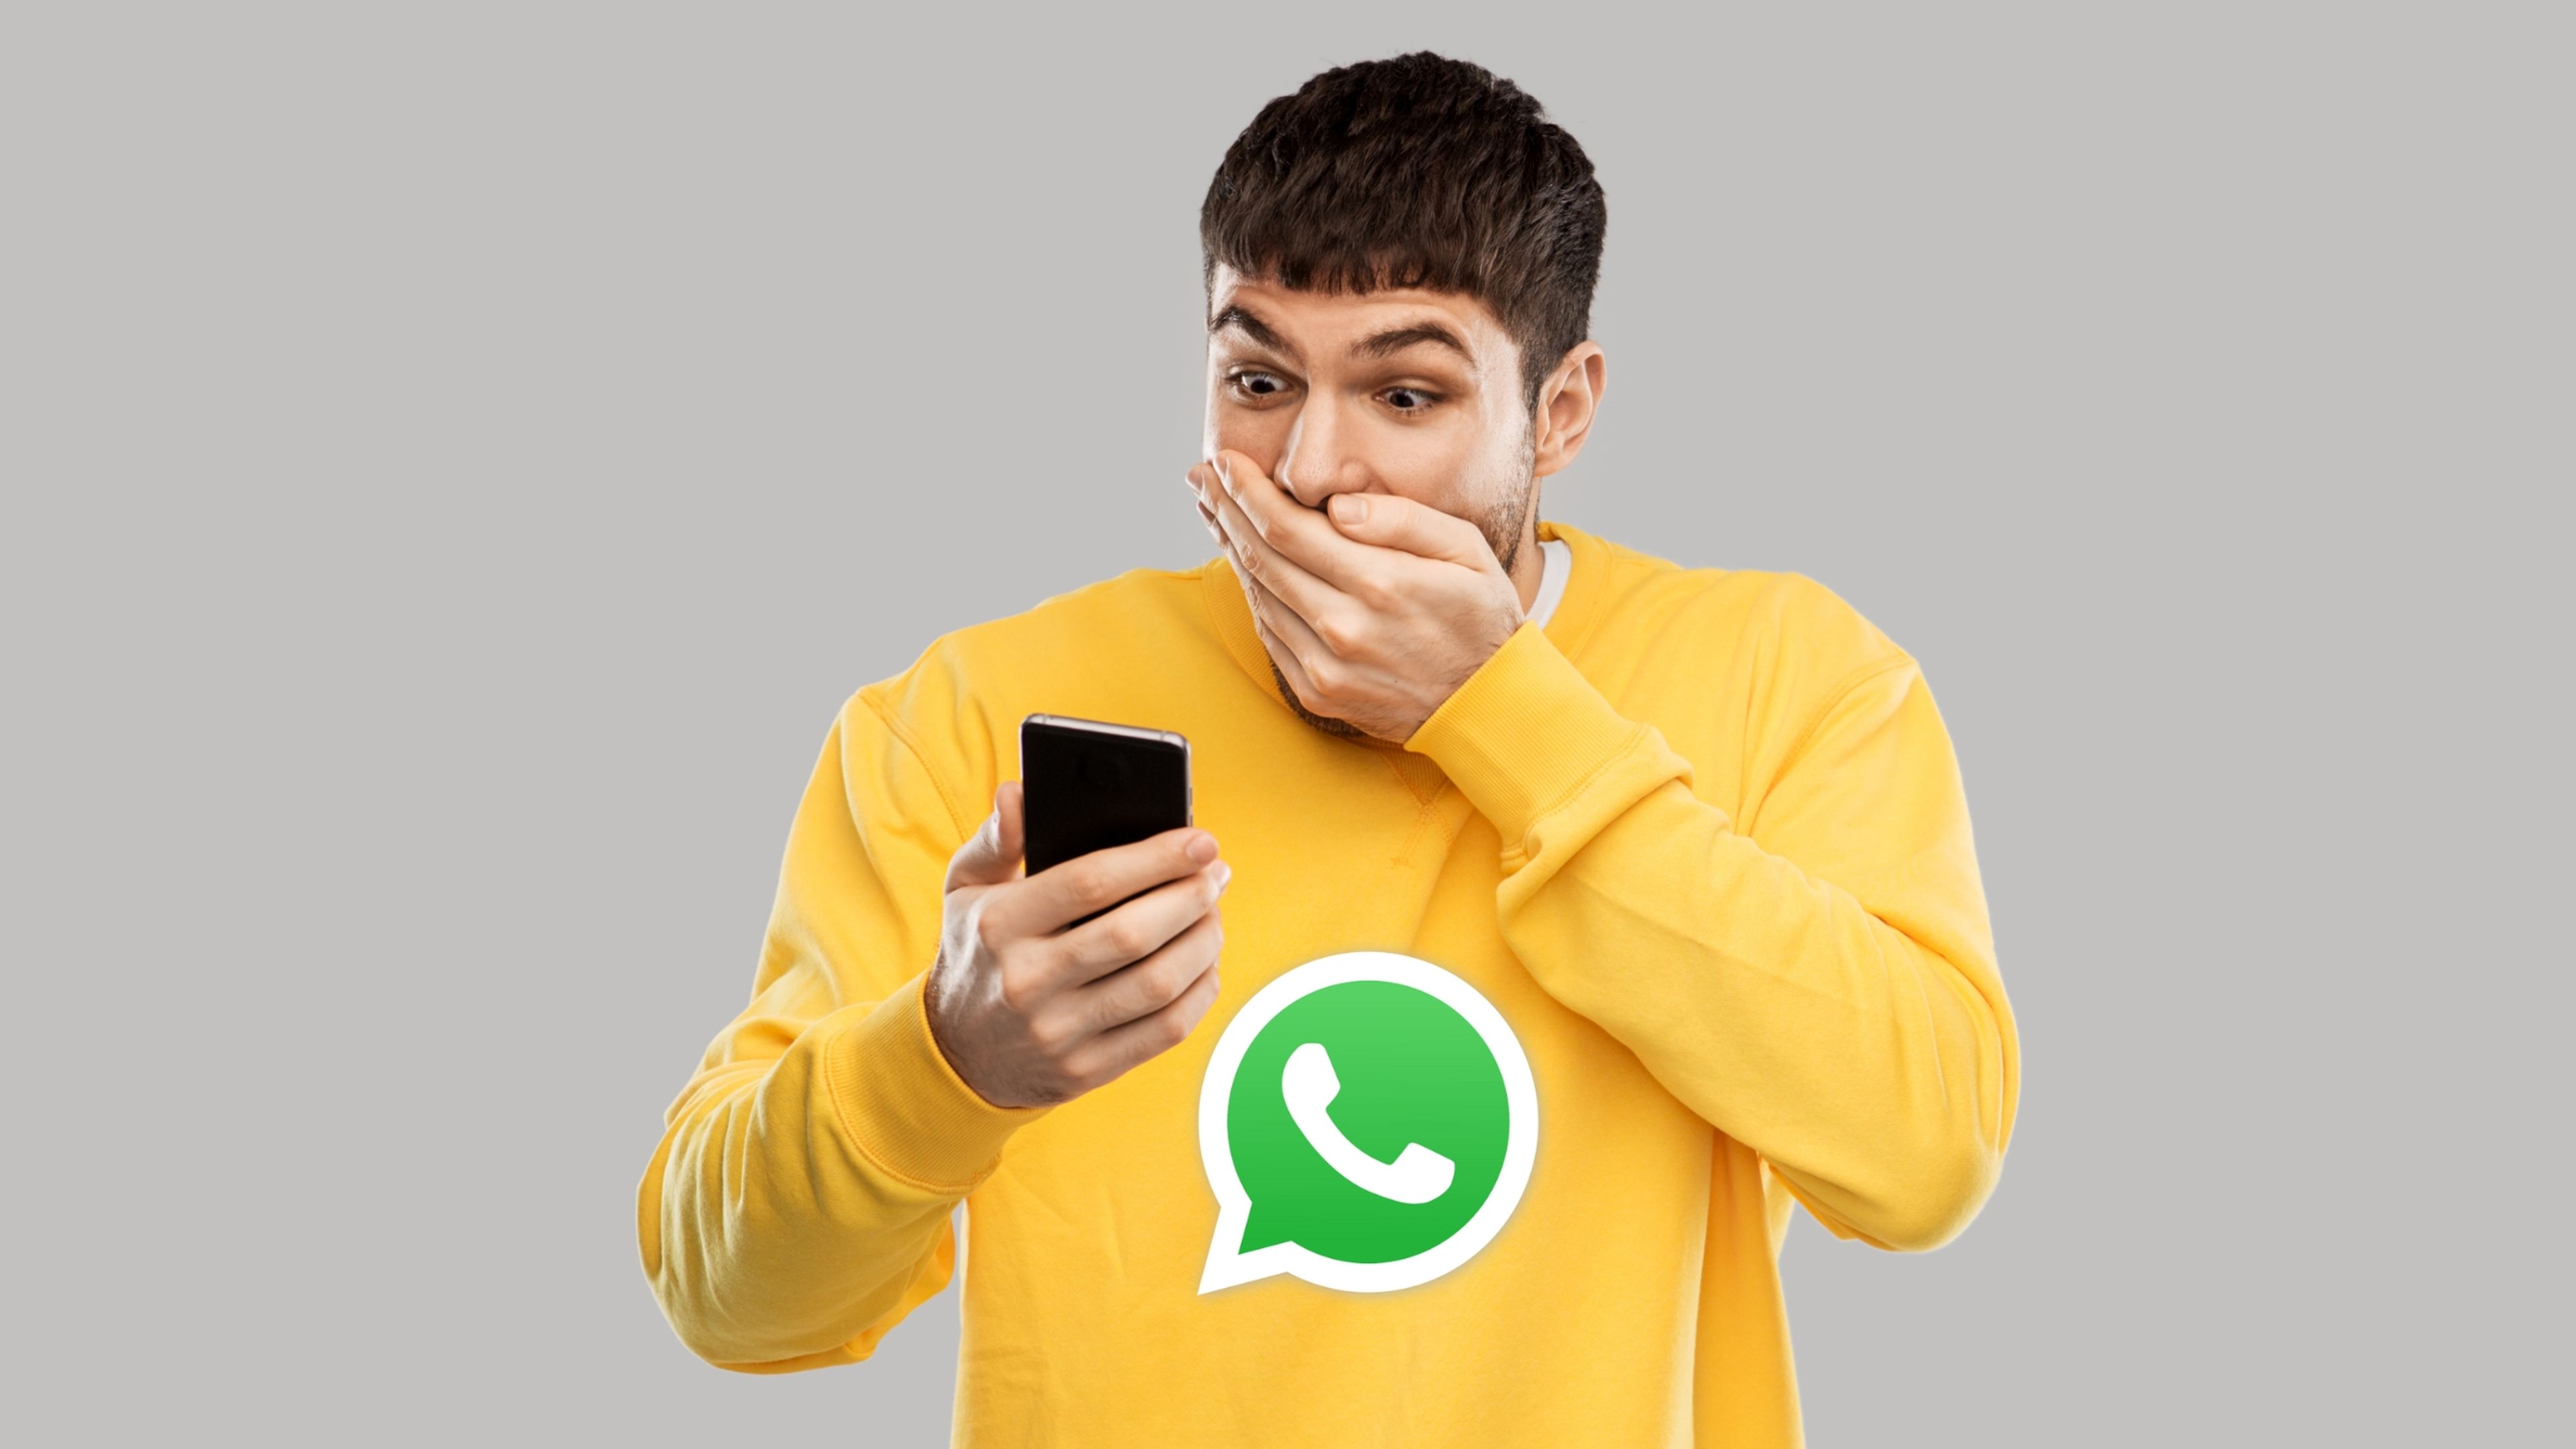 La funciÃ³n para enviar mensajes de audio en WhatsApp "sin manos" que sorprendentemente casi nadie conoce